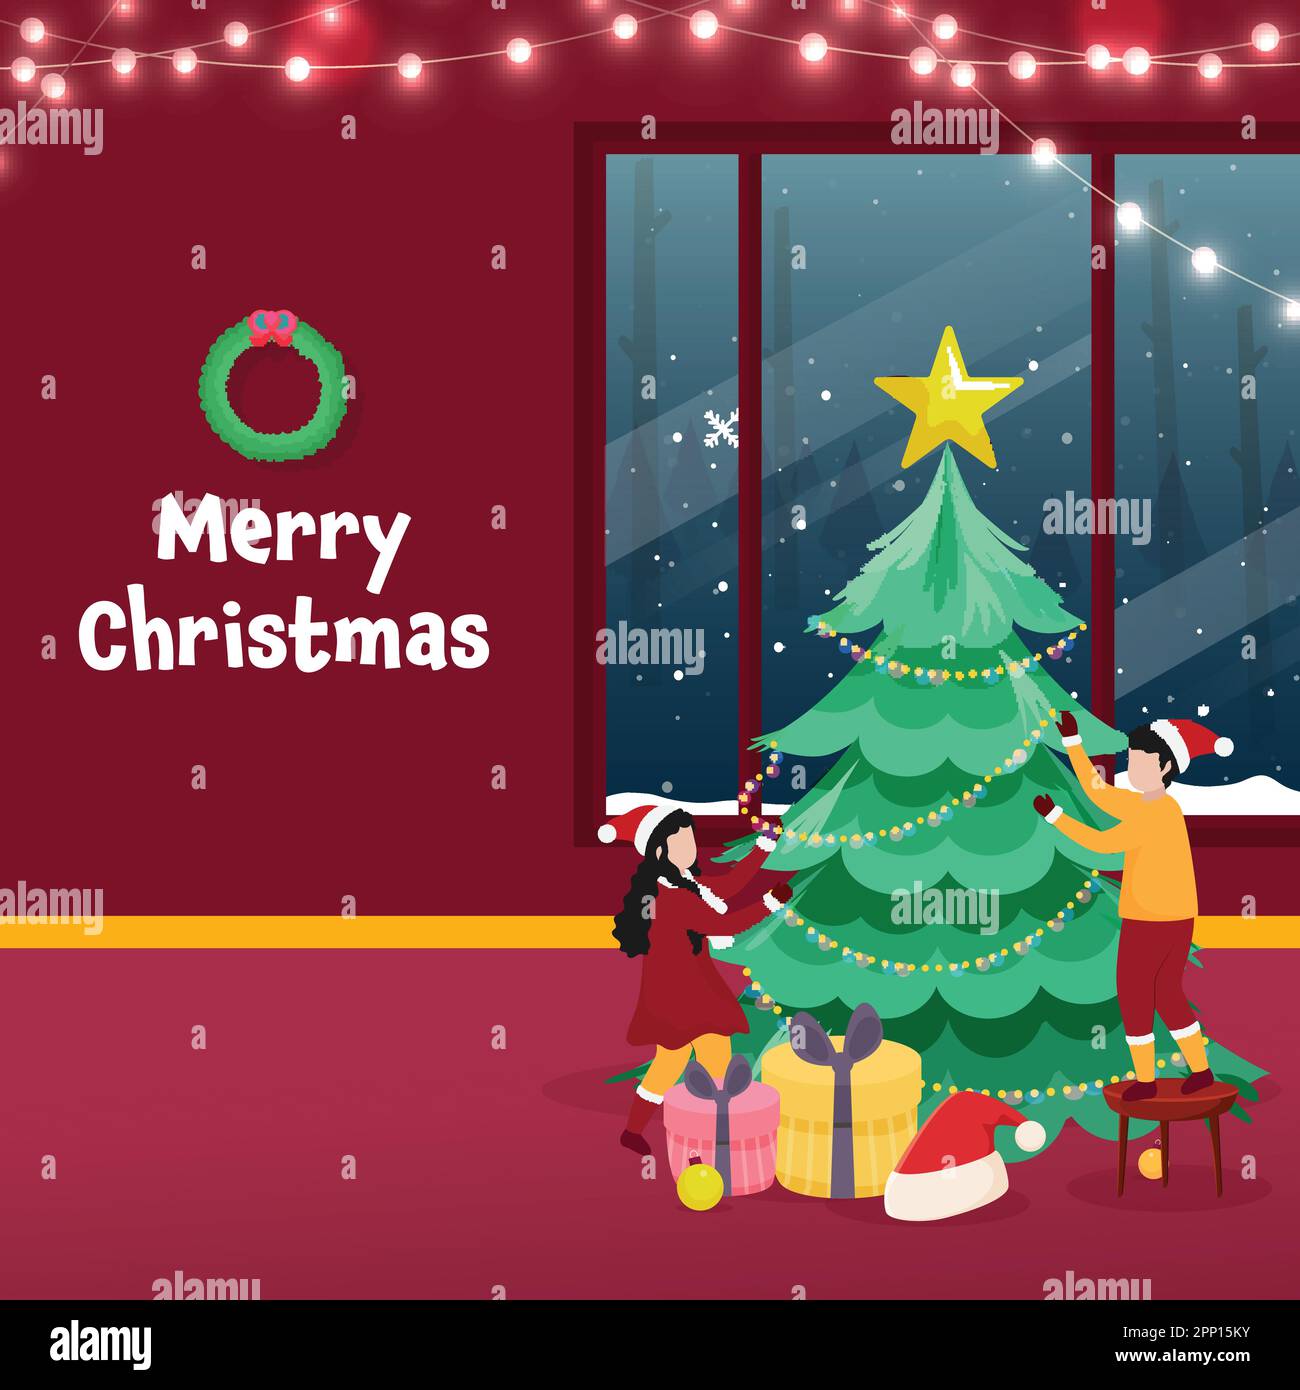 Allegro Natale Celebration Vista interna con Bambini senza volto decorato albero di Natale da Garland illuminazione, scatole regalo e cappello di Santa. Illustrazione Vettoriale